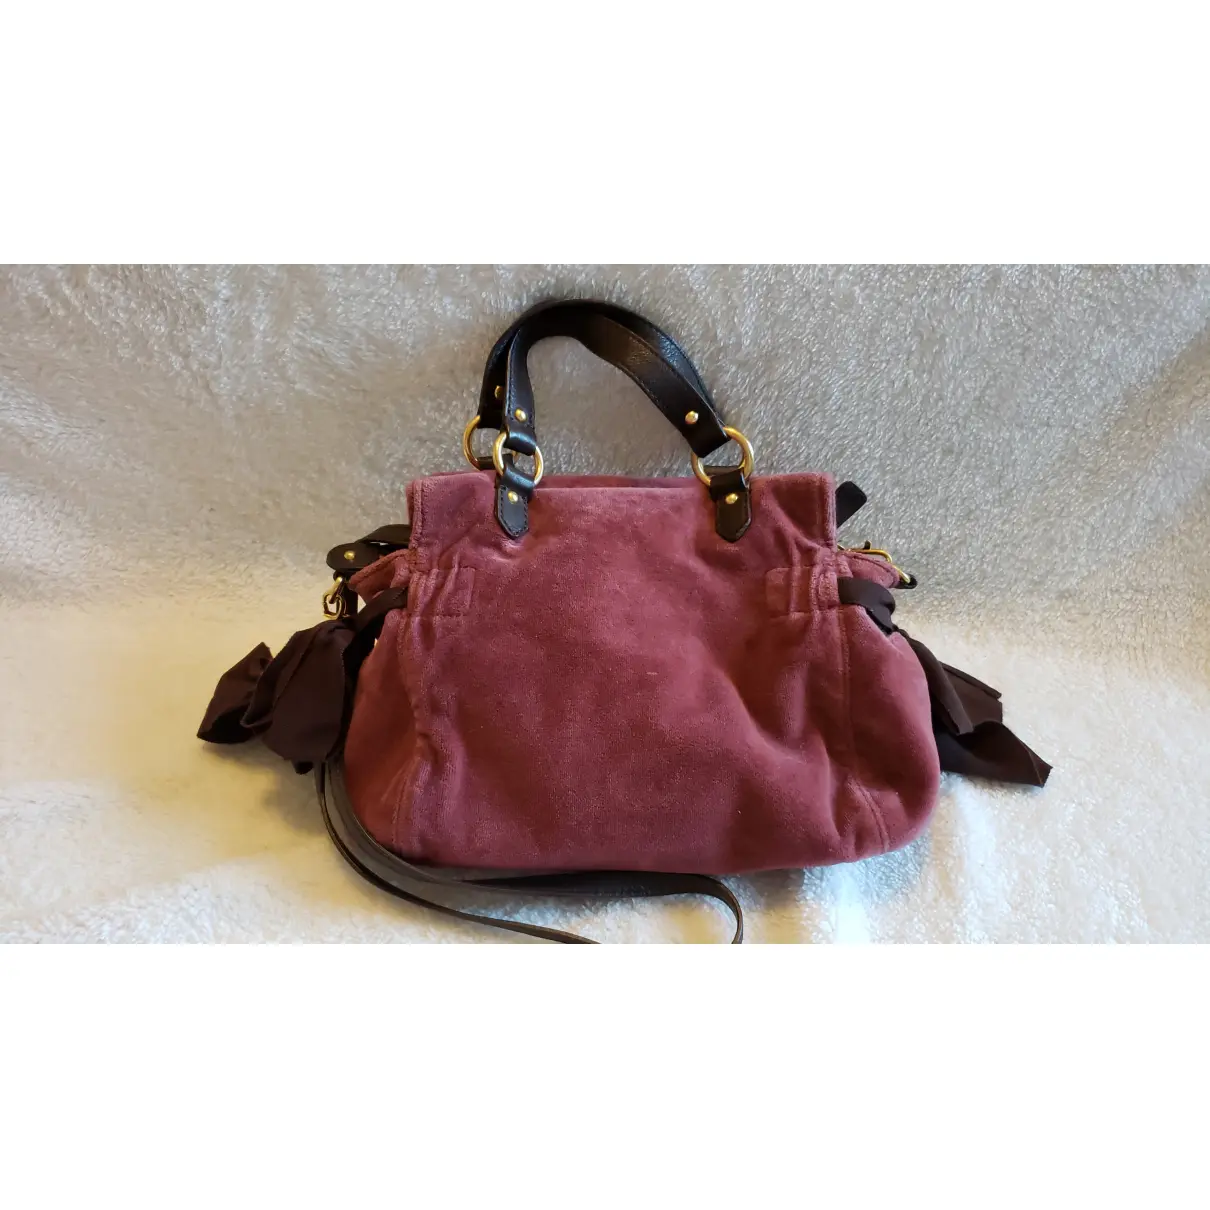 Buy Juicy Couture Cloth handbag online